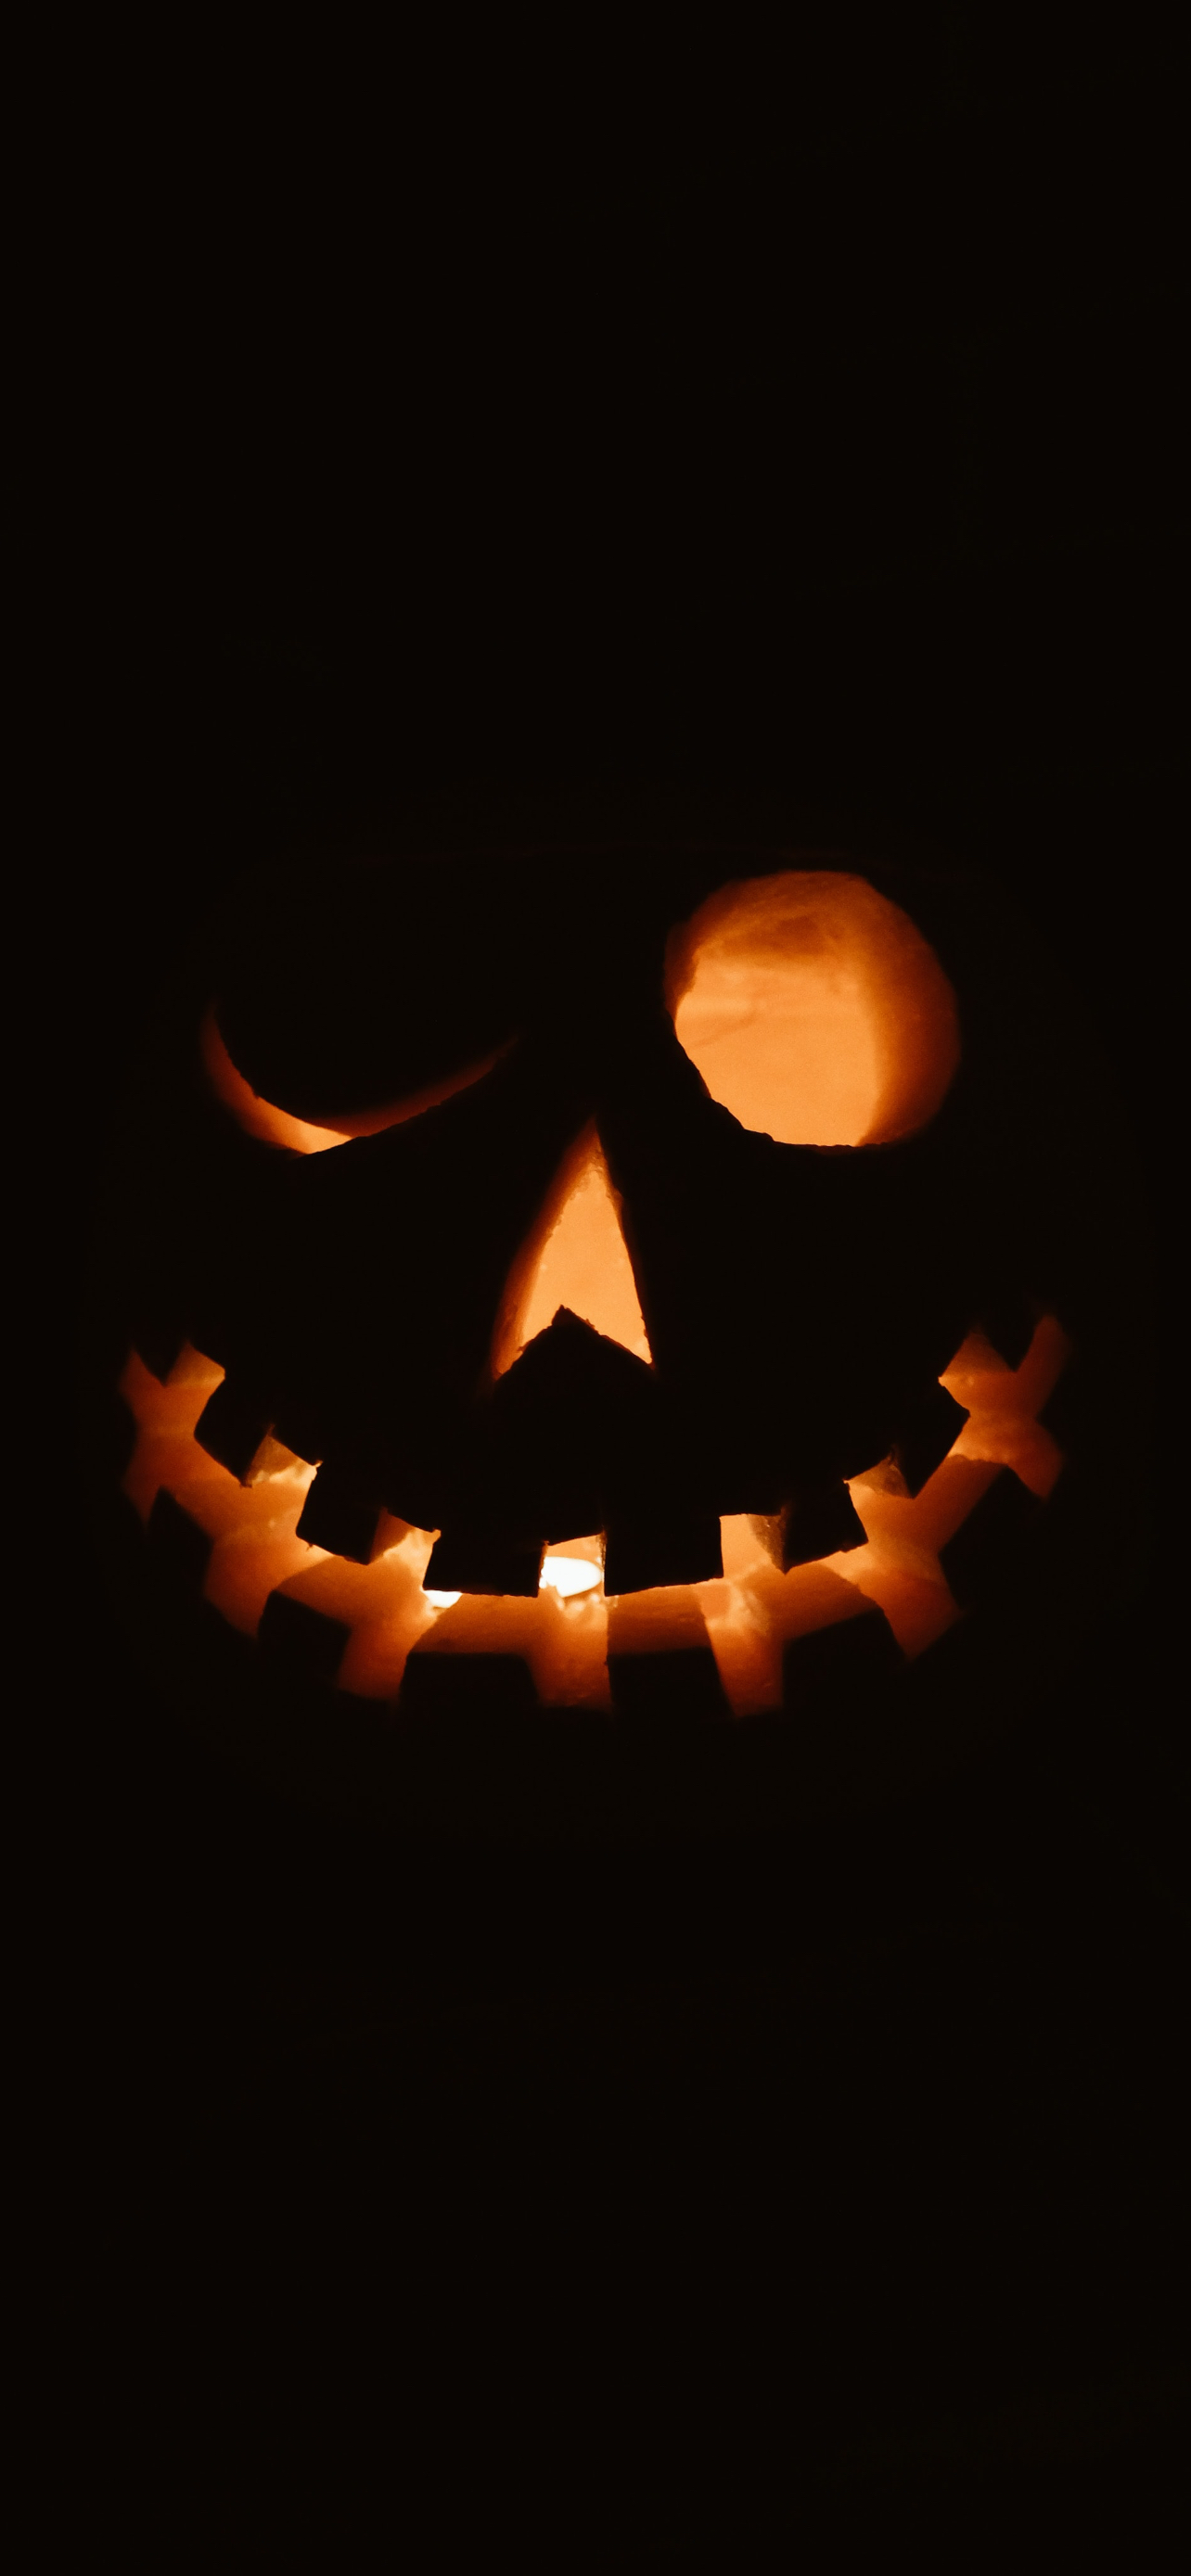 Hình nền Halloween cho iPhone là một sự lựa chọn tuyệt vời để tạo ra một không khí đáng sợ cho chiếc điện thoại của bạn. Thử tải về và cảm nhận cùng Halloween! 